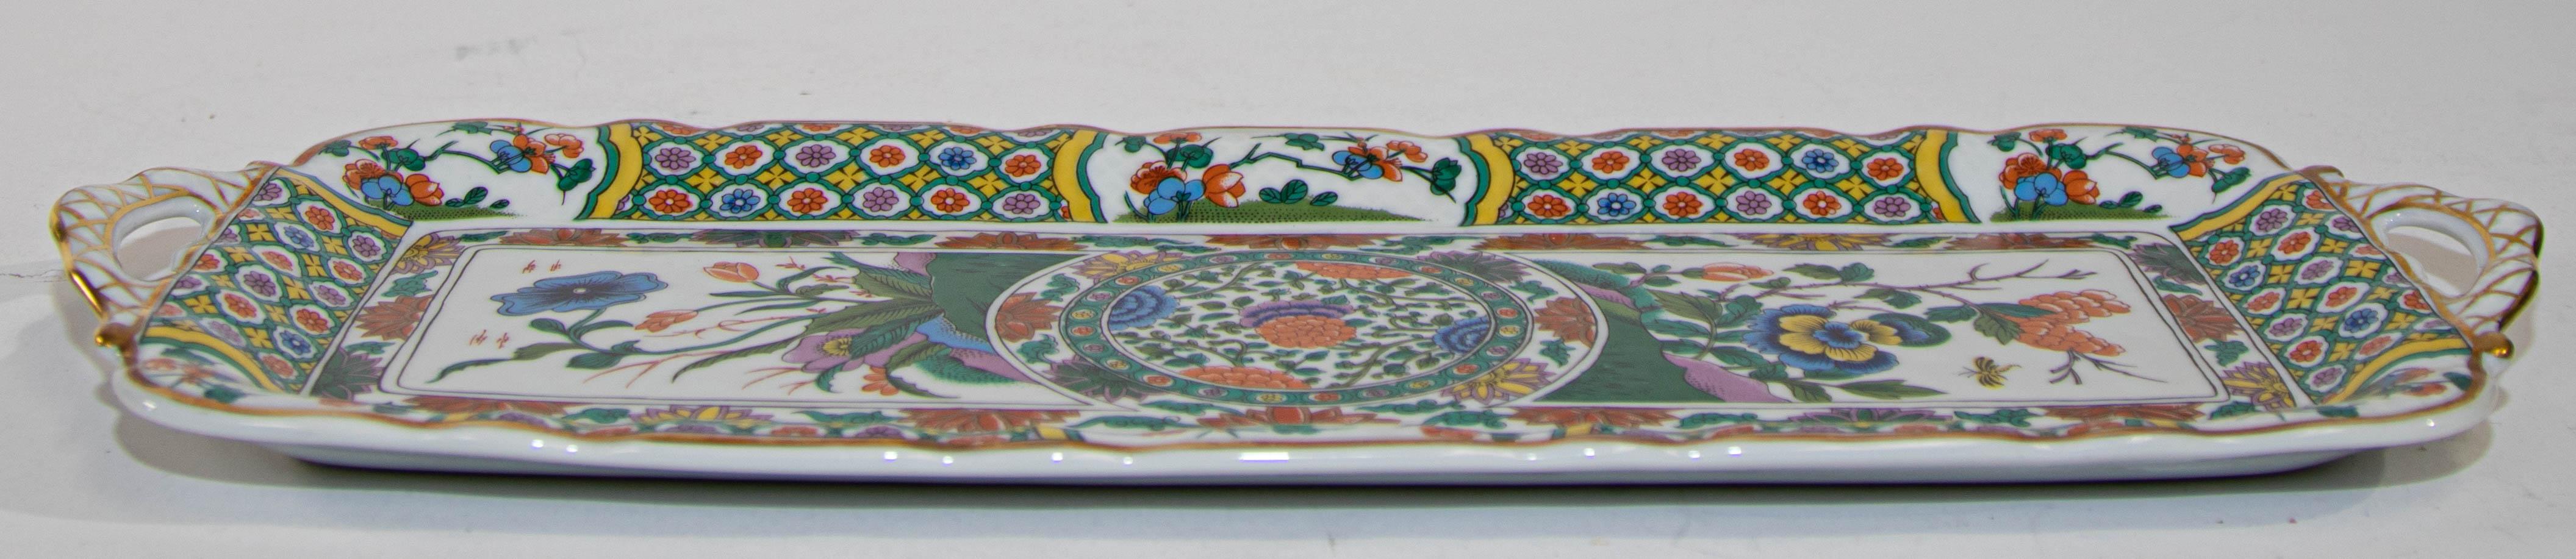 20th Century Vintage Limoges Bernardaud Asian Imari Pattern Porcelain Cake Handled Tray